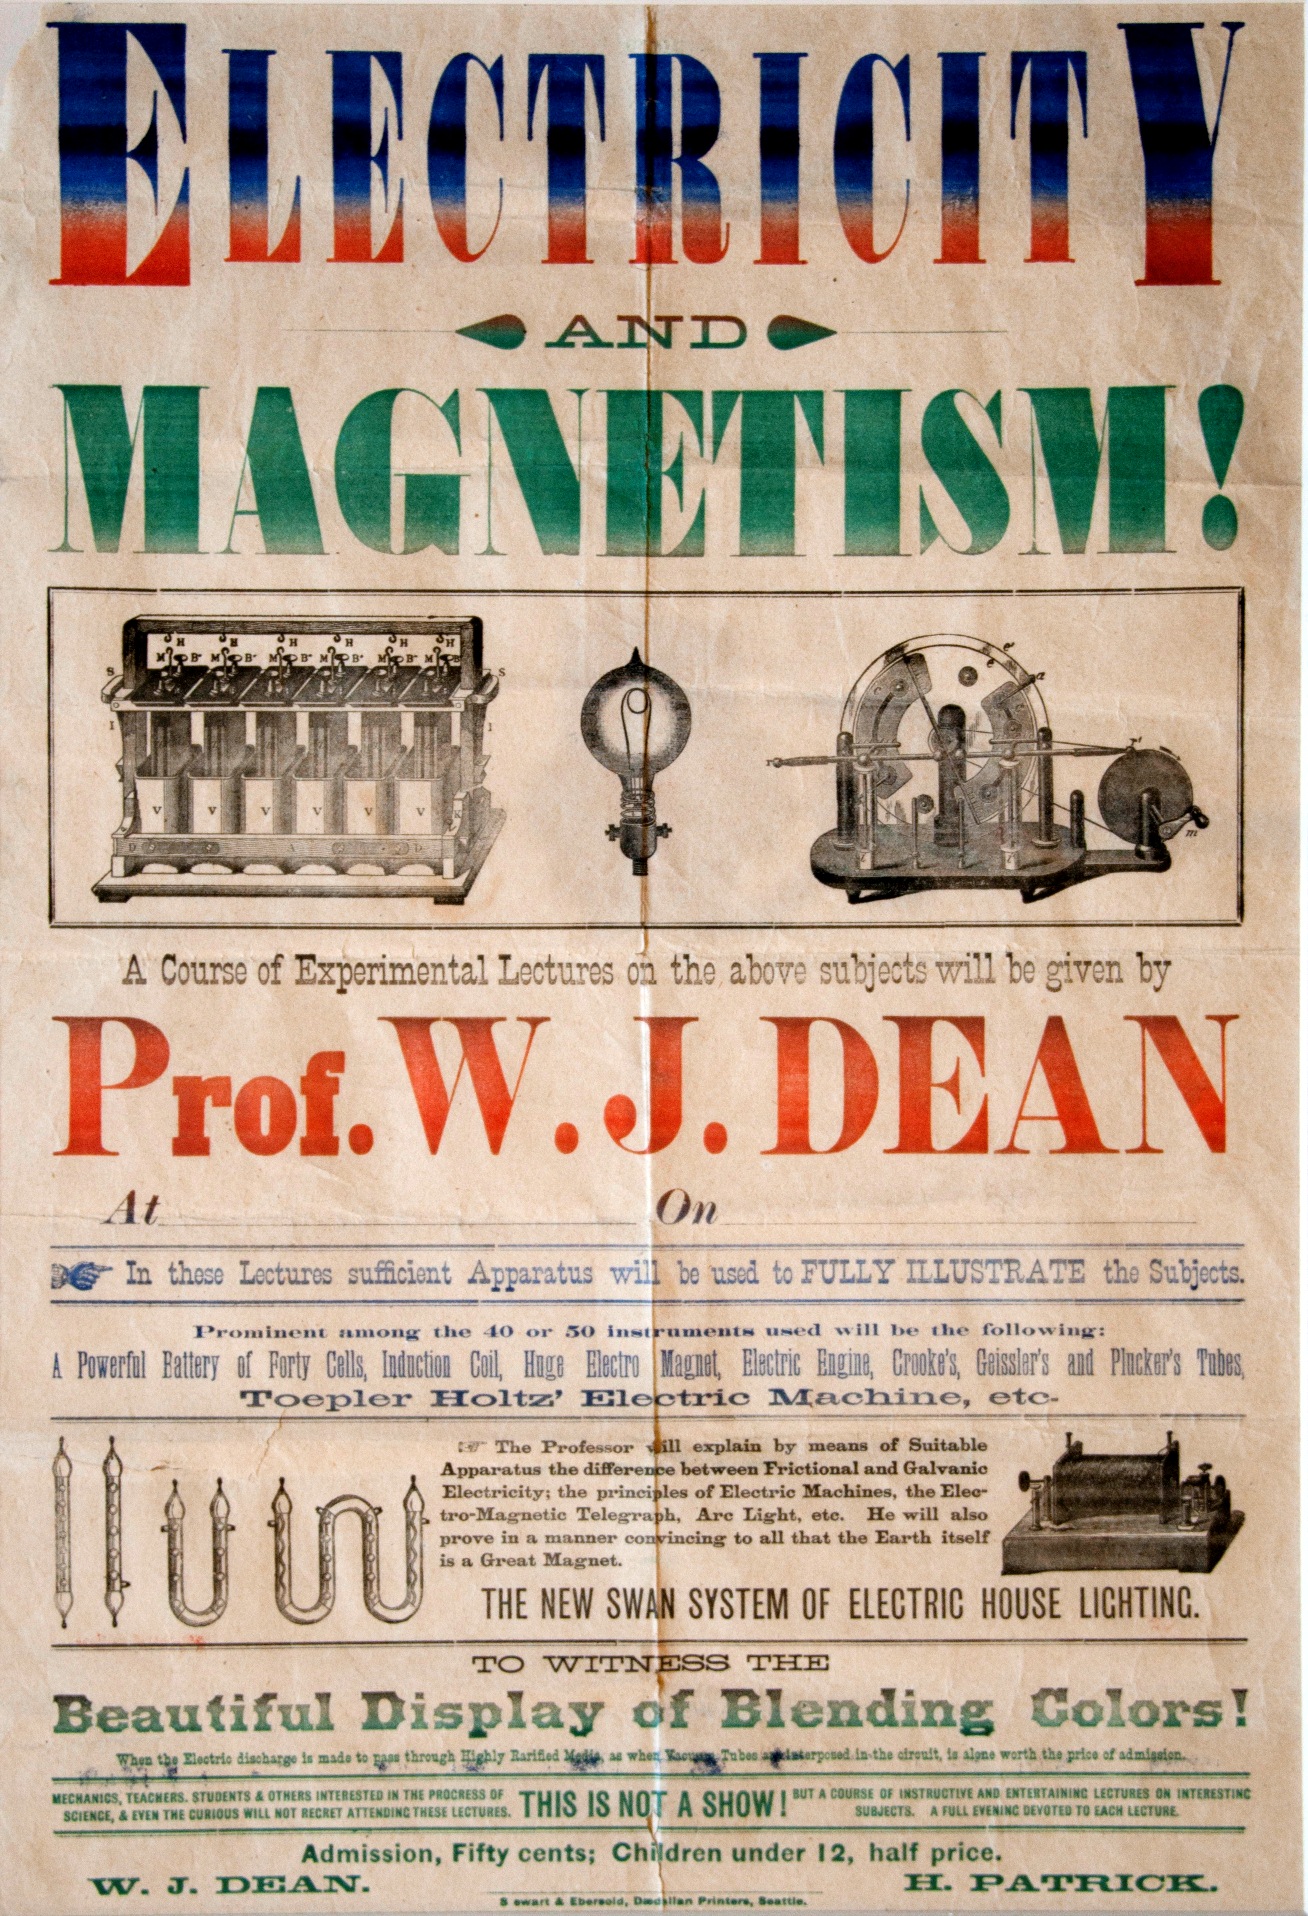 Dean Poster, circa 1881